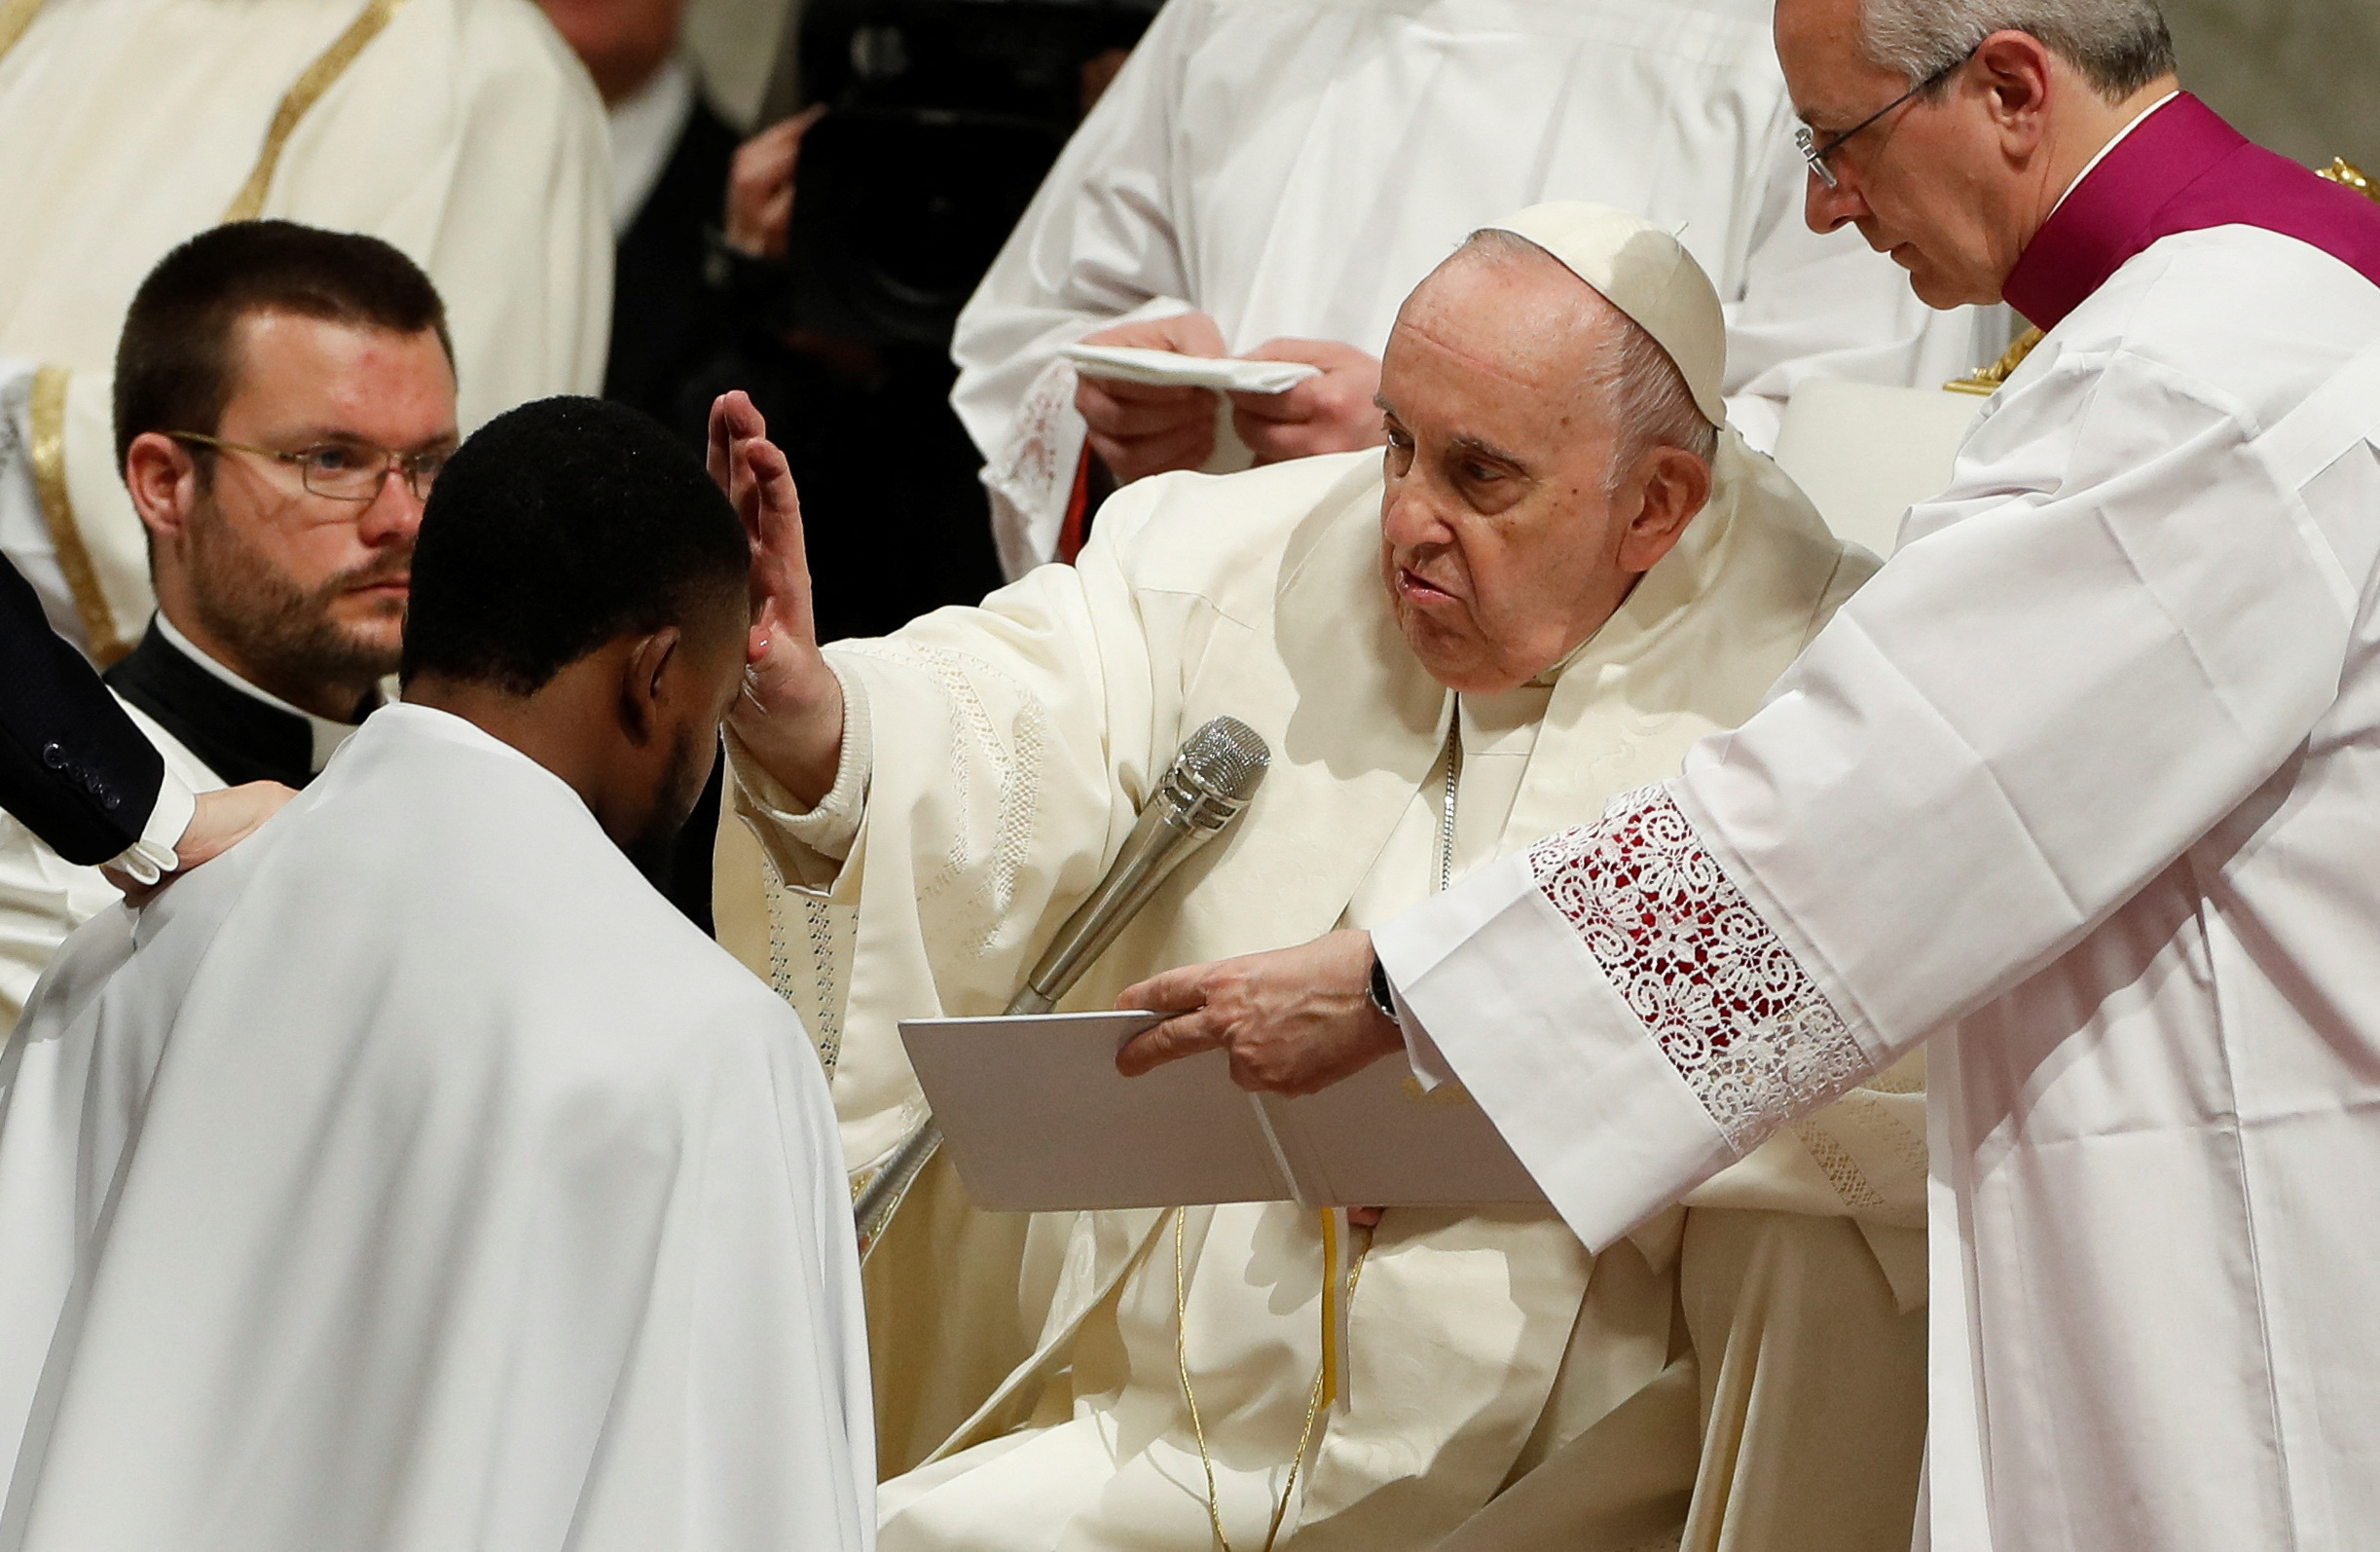 El Papa Francisco da una bendición después de realizar un bautismo durante la Vigilia Pascual (REUTERS/Remo Casilli)